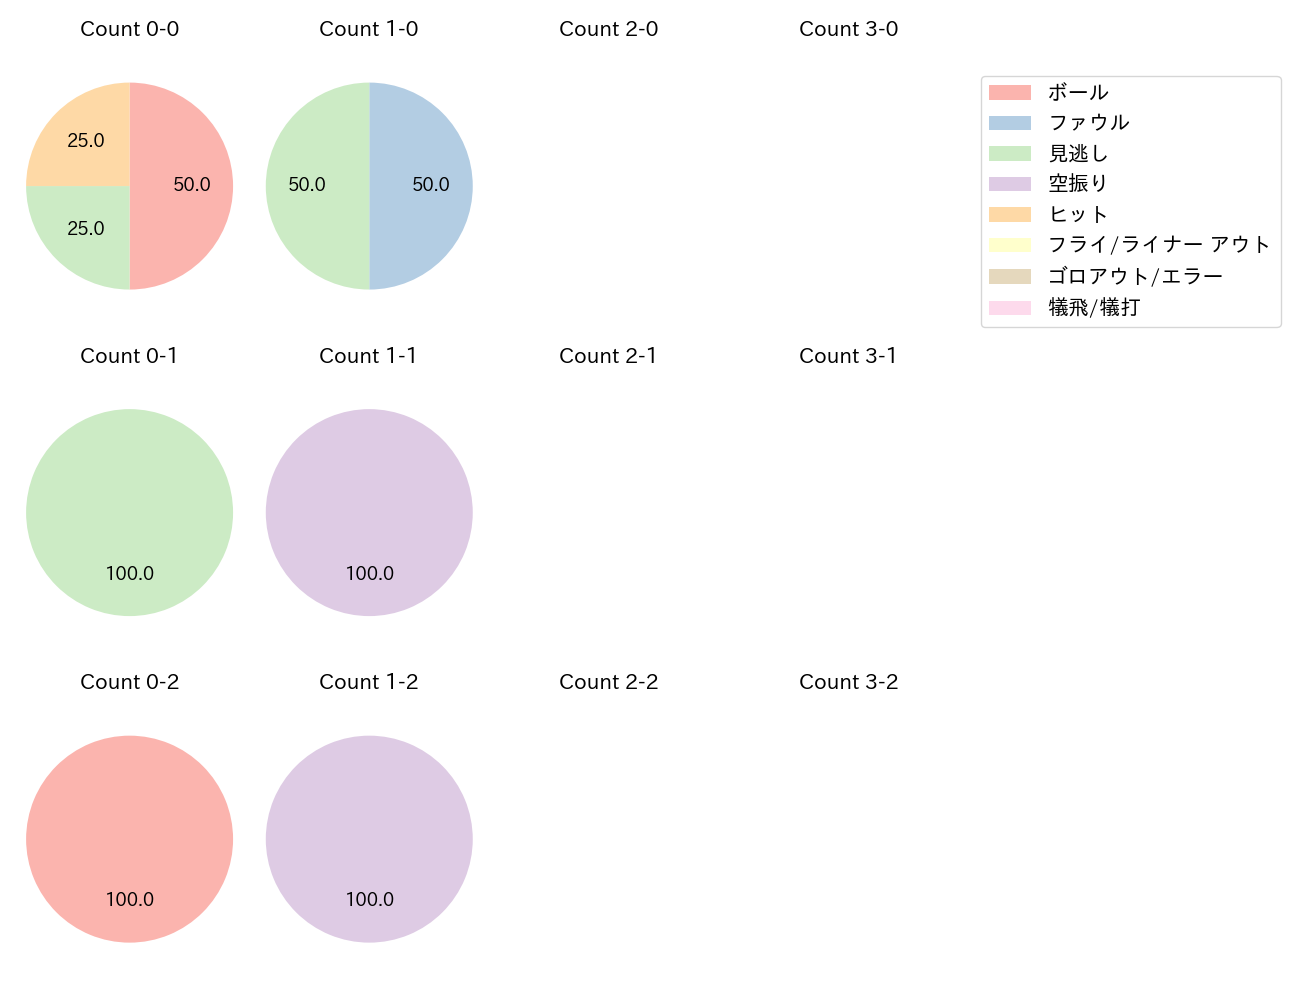 牧 秀悟の球数分布(2023年3月)